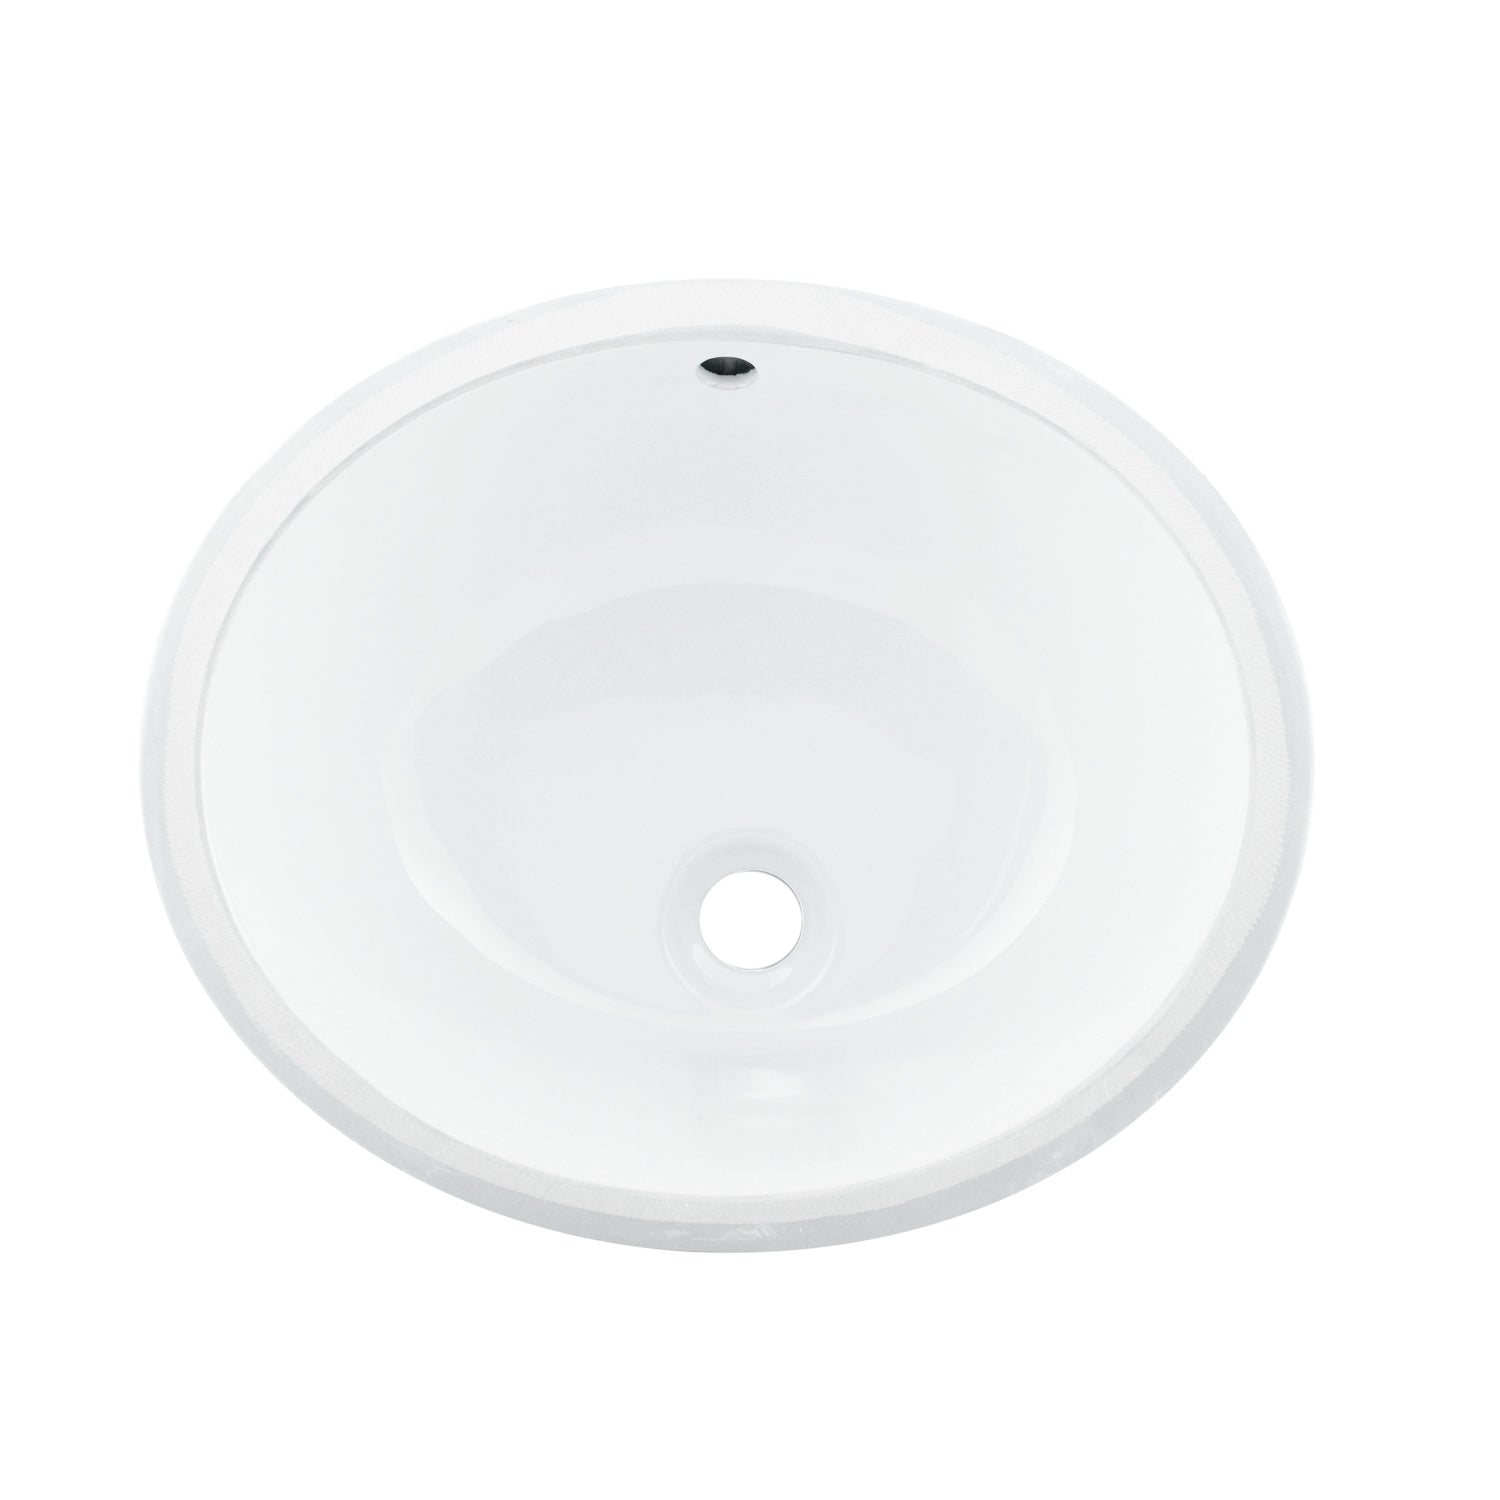 DAX Lavabo de baño bajo encimera ovalado de cerámica, acabado blanco, 18-1/16 x 15-13/16 x 8-3/16 pulgadas (BSN-100)